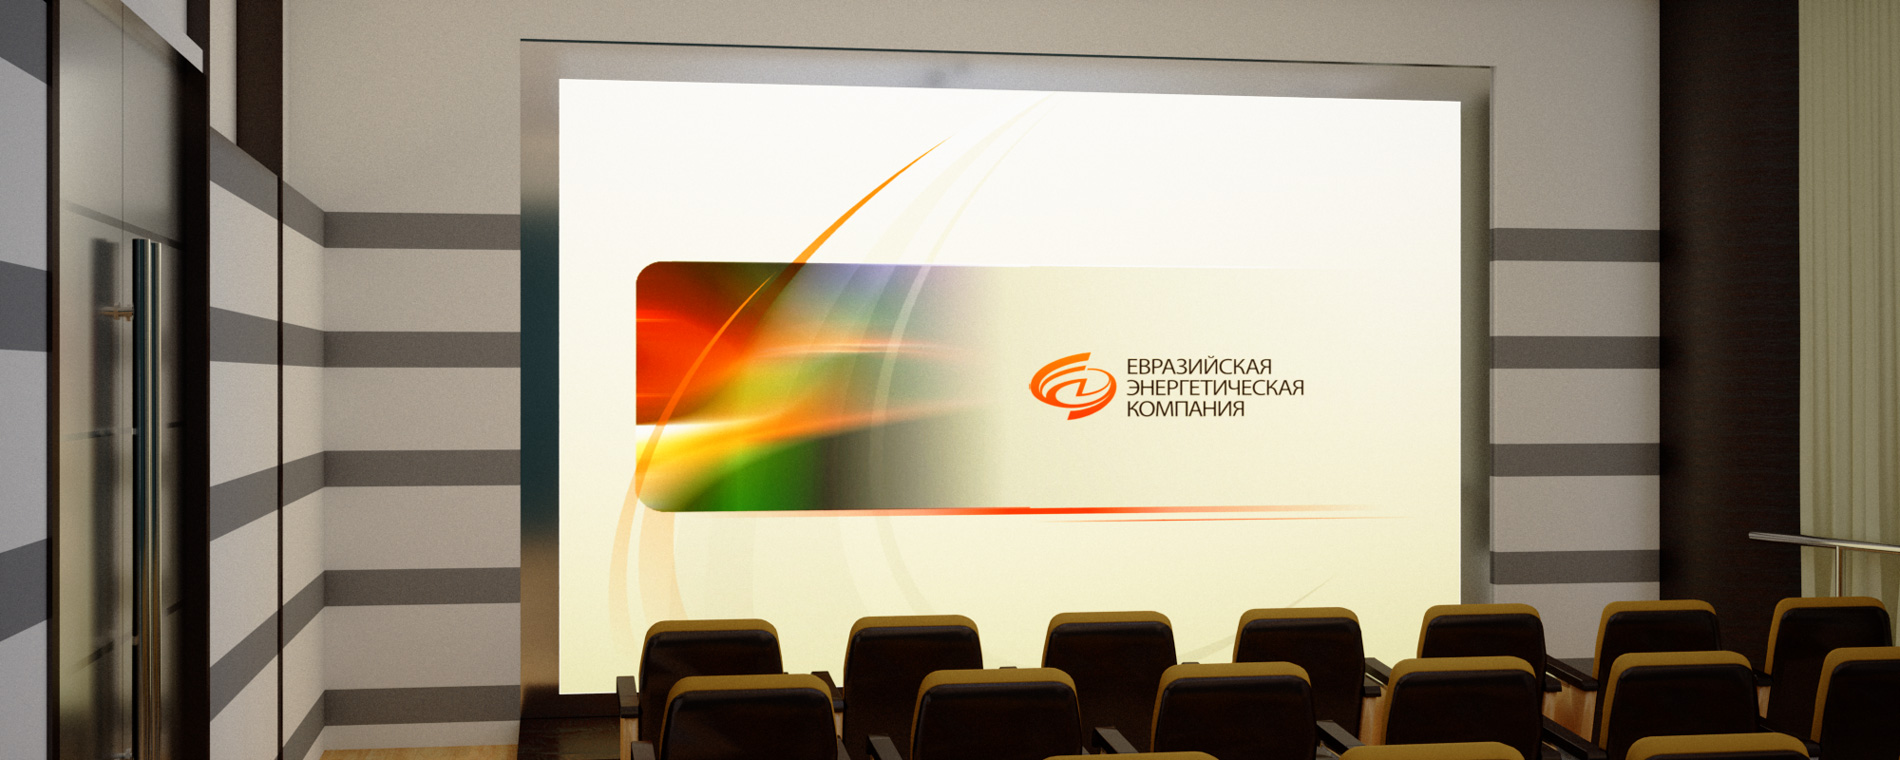 Логотип, элементы фирменного стиля, брендбук, веб-сайт энергосбытовой компании «ЕЭК» 